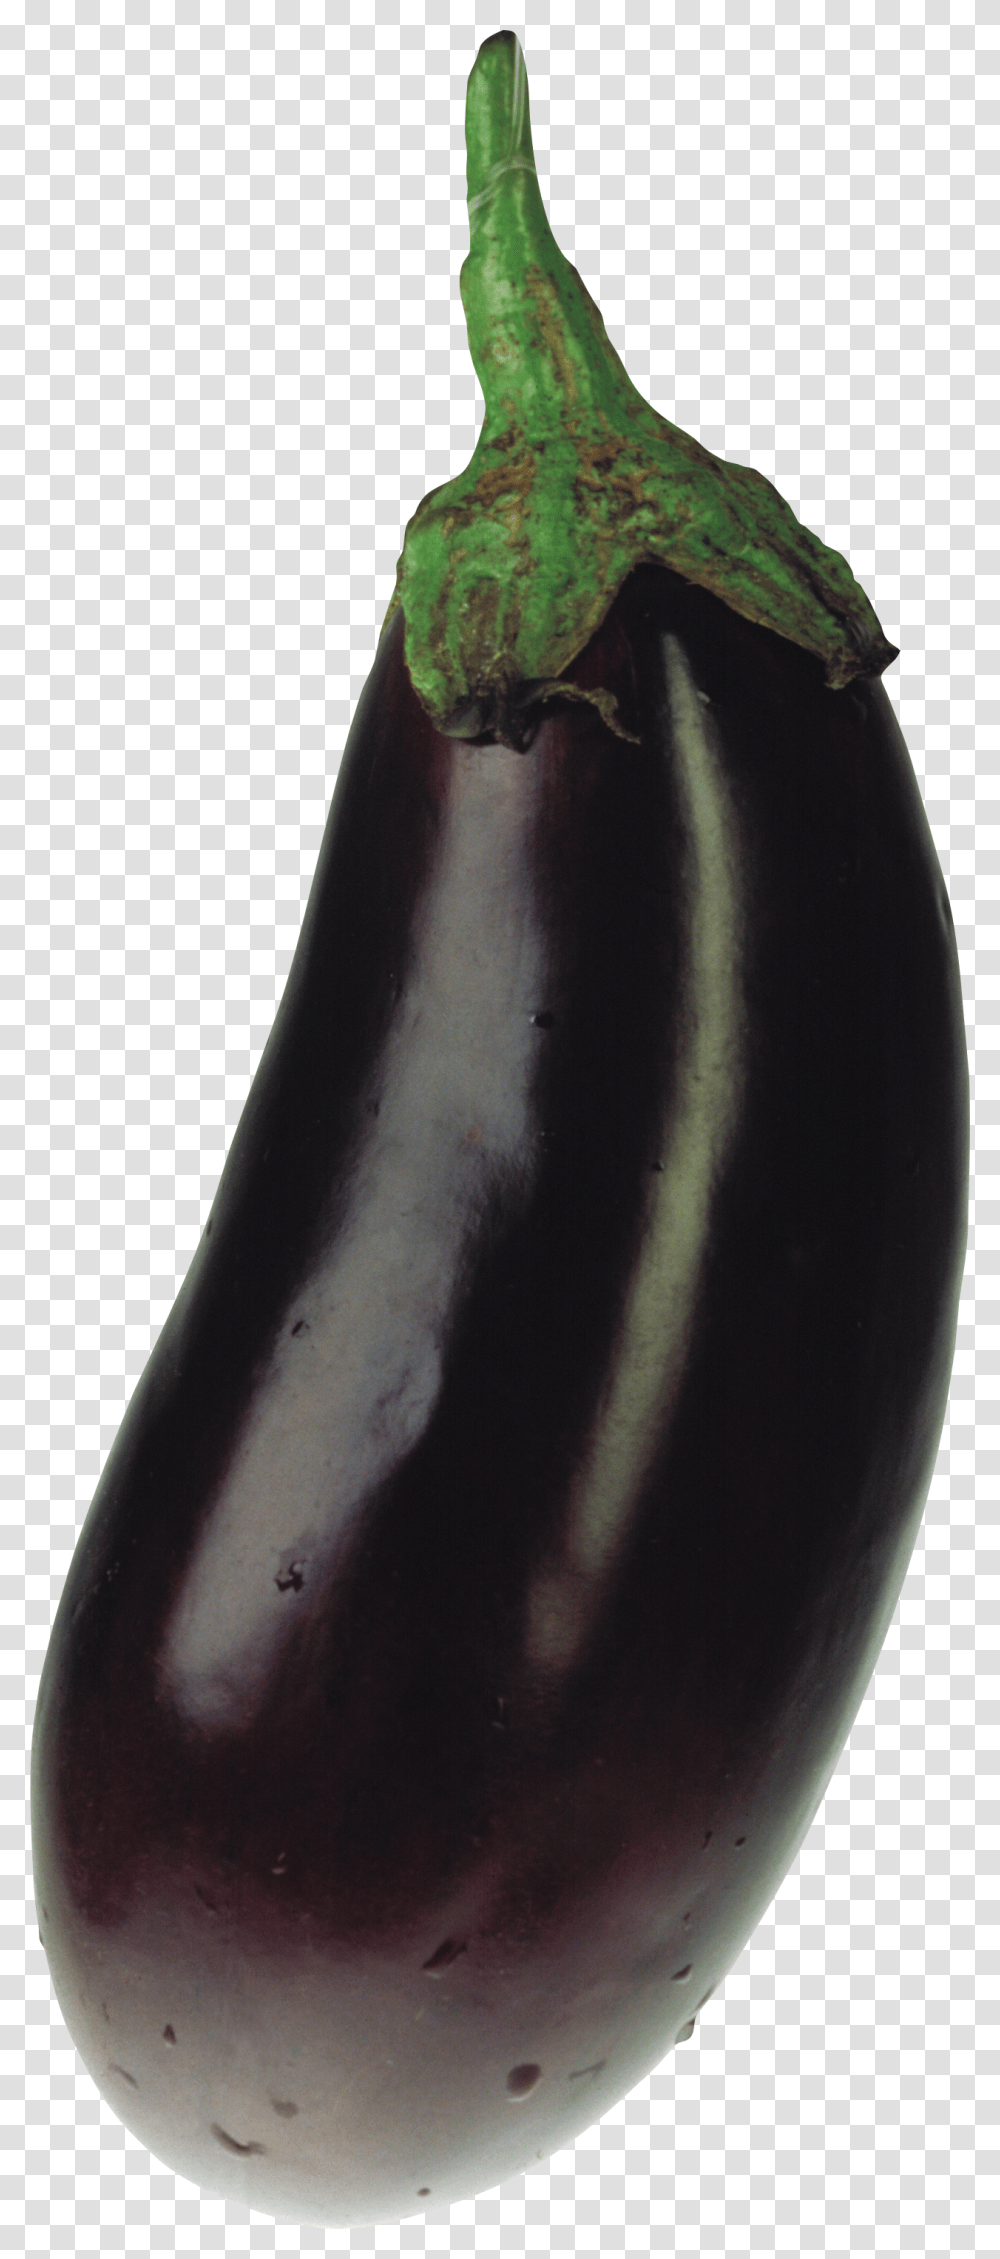 Eggplant, Vegetable, Food, Milk, Beverage Transparent Png